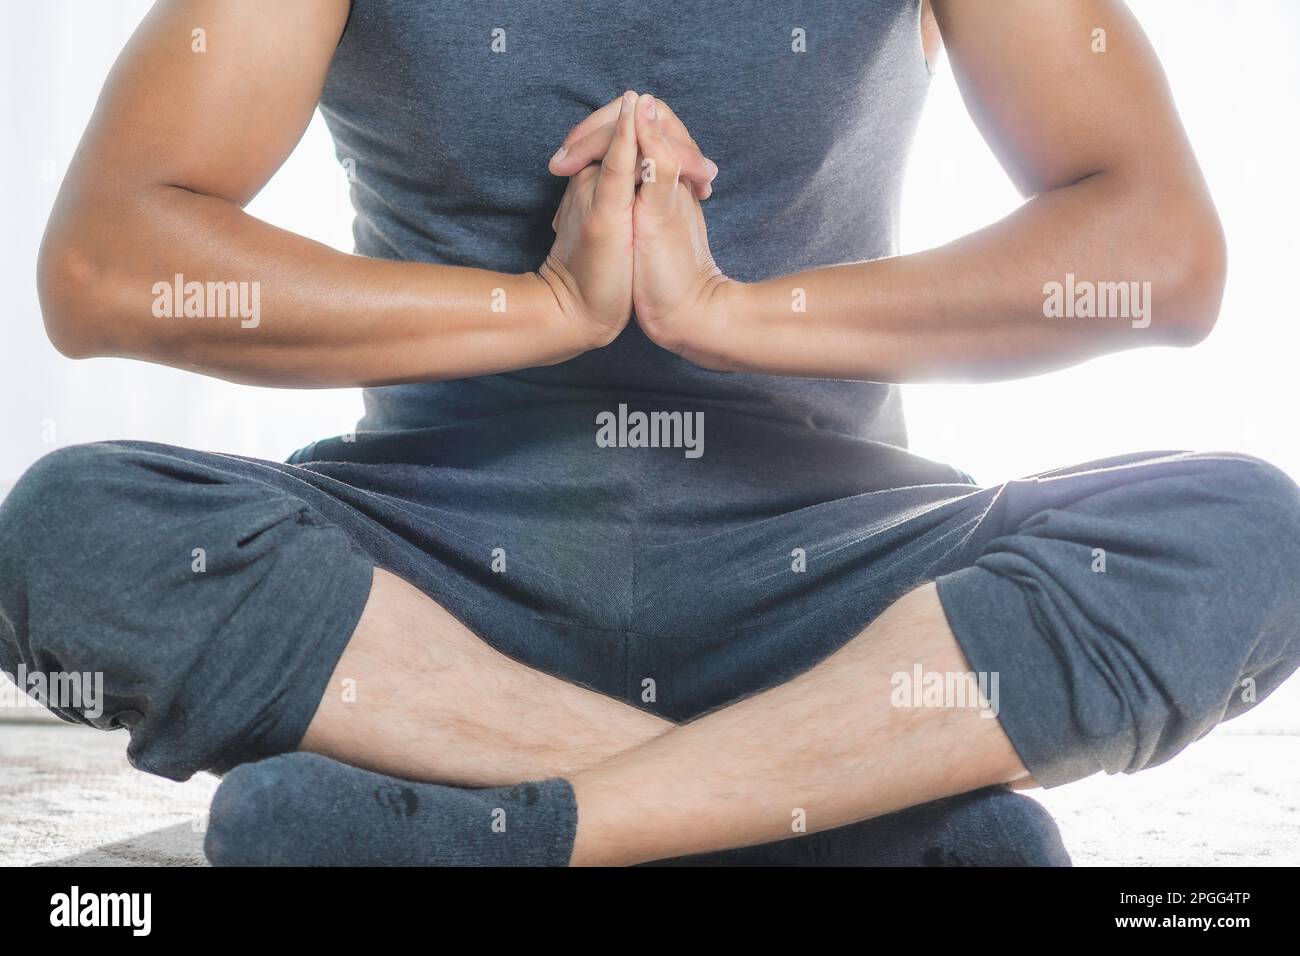 El hombre hace yoga en interiores, se acerca, hace posturas de meditación profunda. Es muy tranquilo. Foto de stock